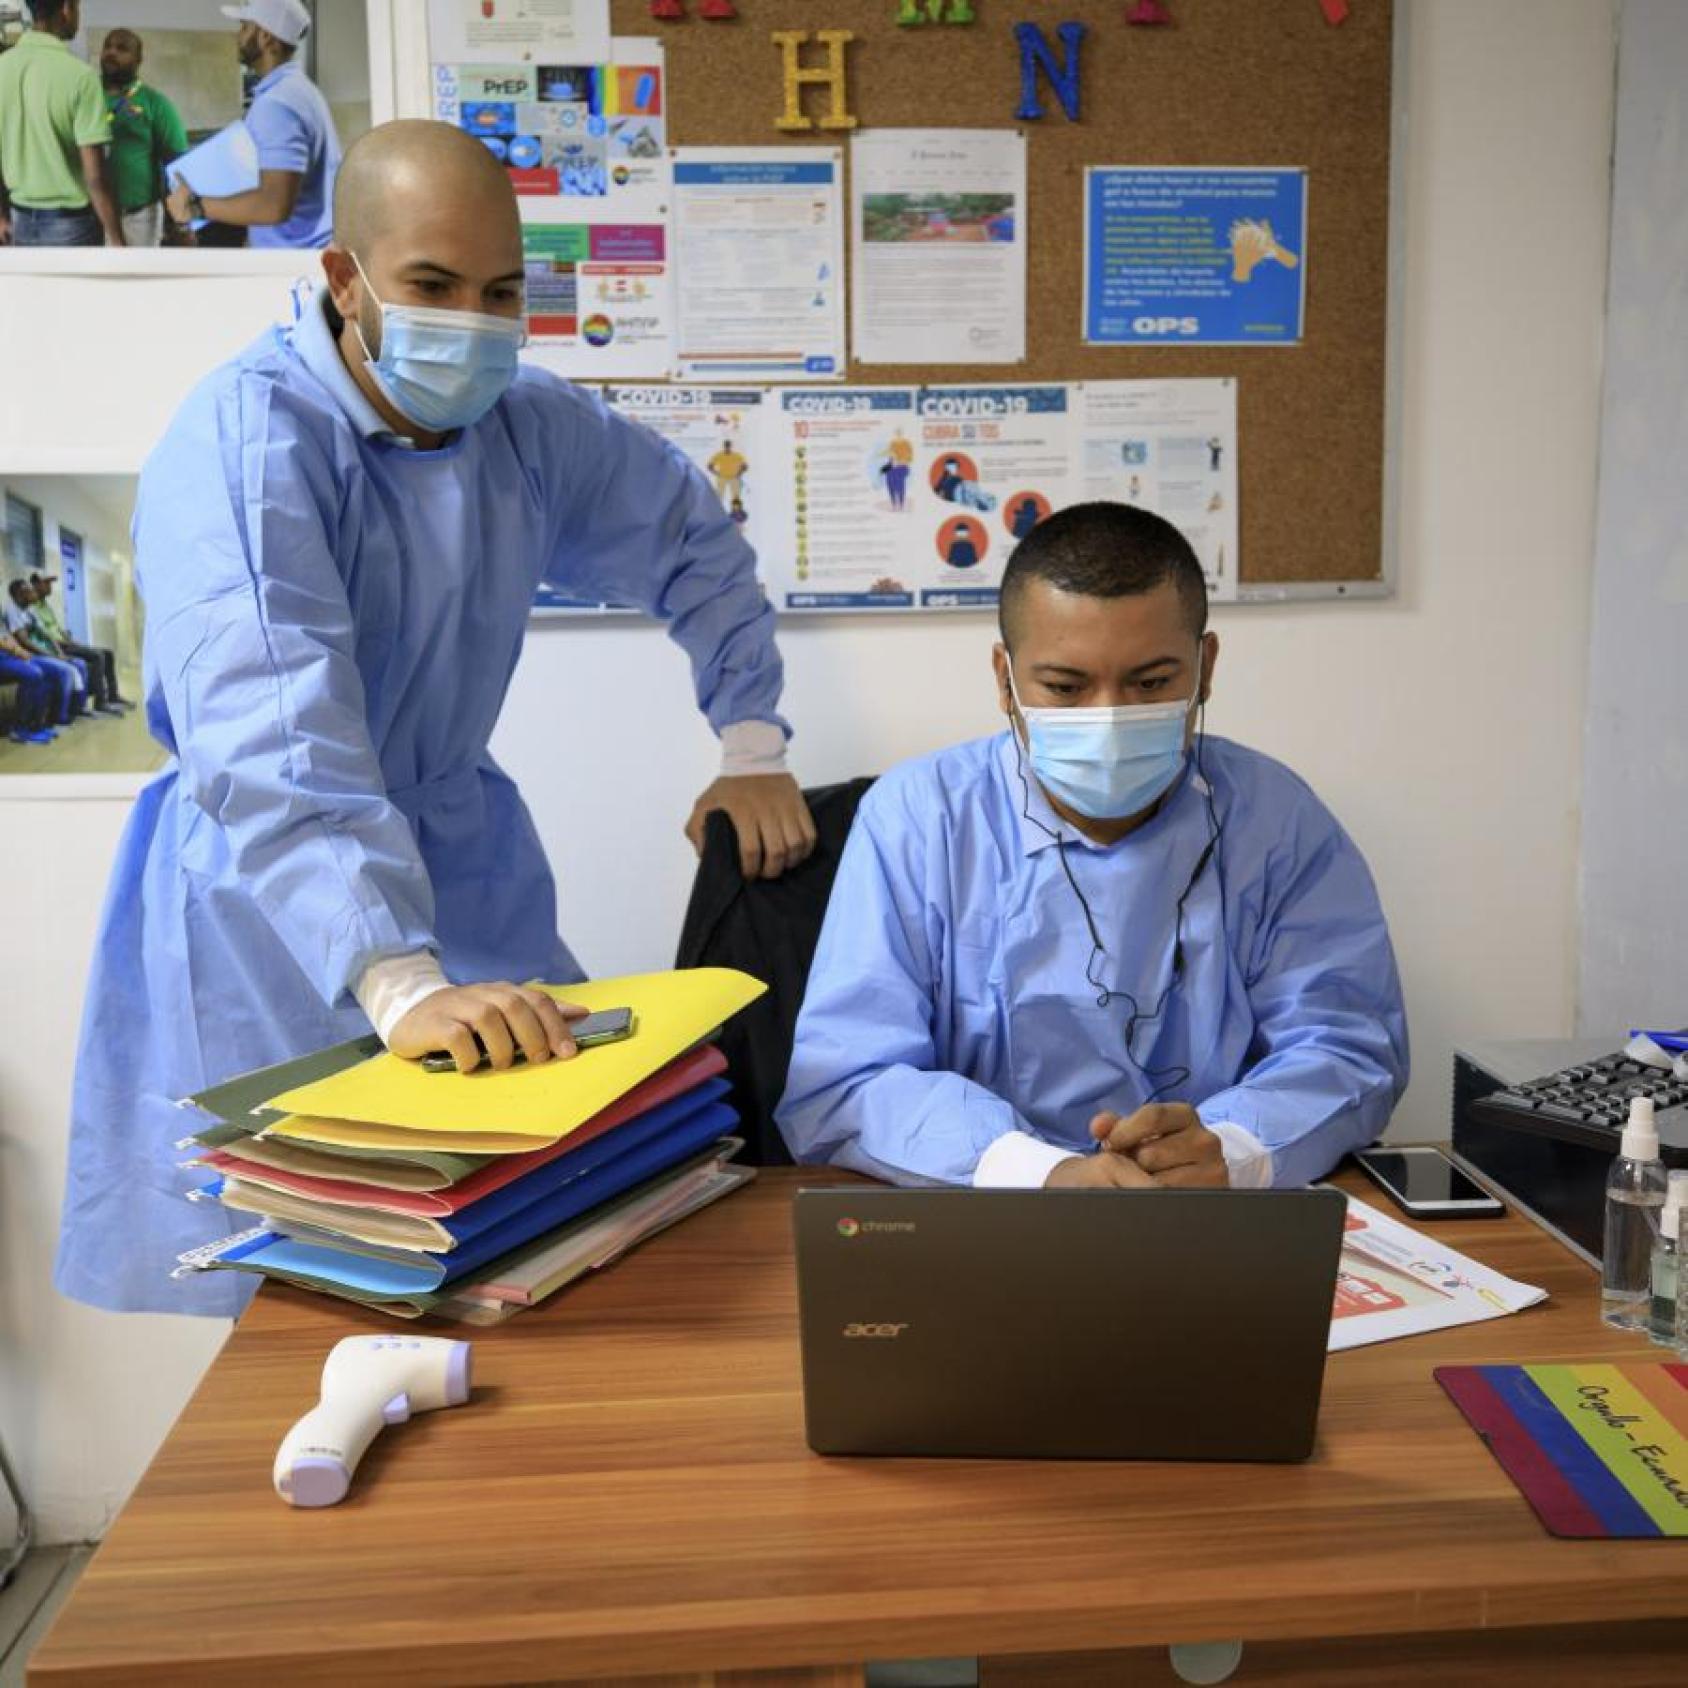 رجلان يرتديان الزي الطبي ينظران إلى جهاز كمبيوتر على مكتب.